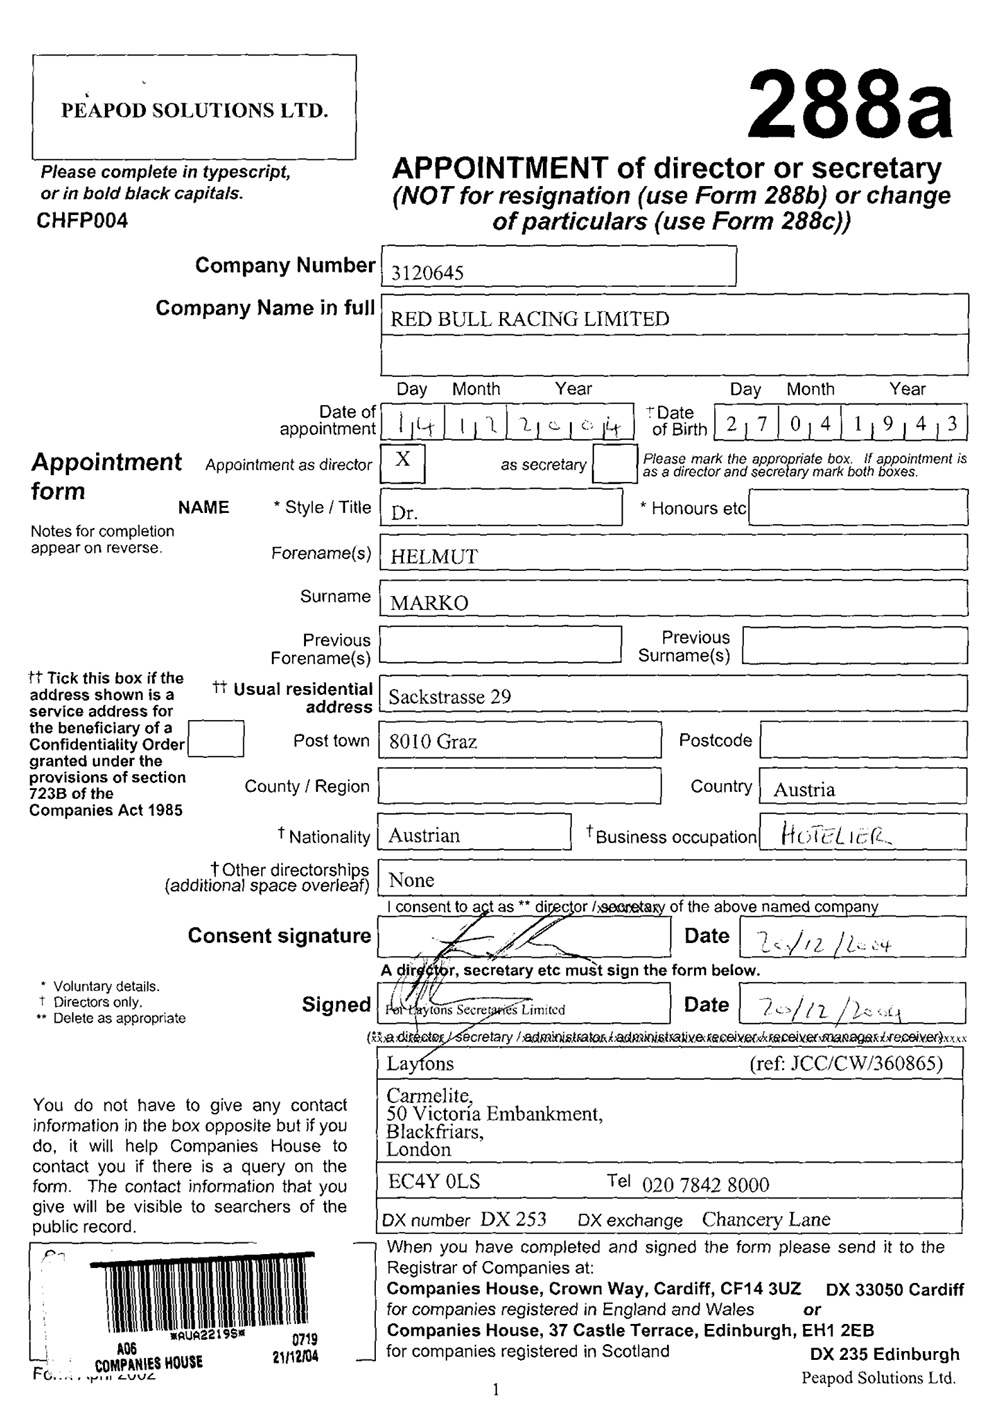 ヘルムート・マルコが2004年12月14日付けでレッドブル・レーシング社の取締役に就任した事を示す役員変更登記申請書